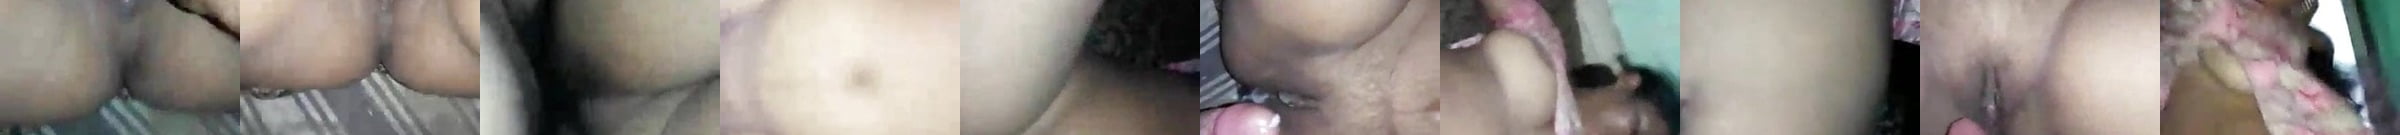 Bhabhi Ki Chut Porn Videos Xhamster 